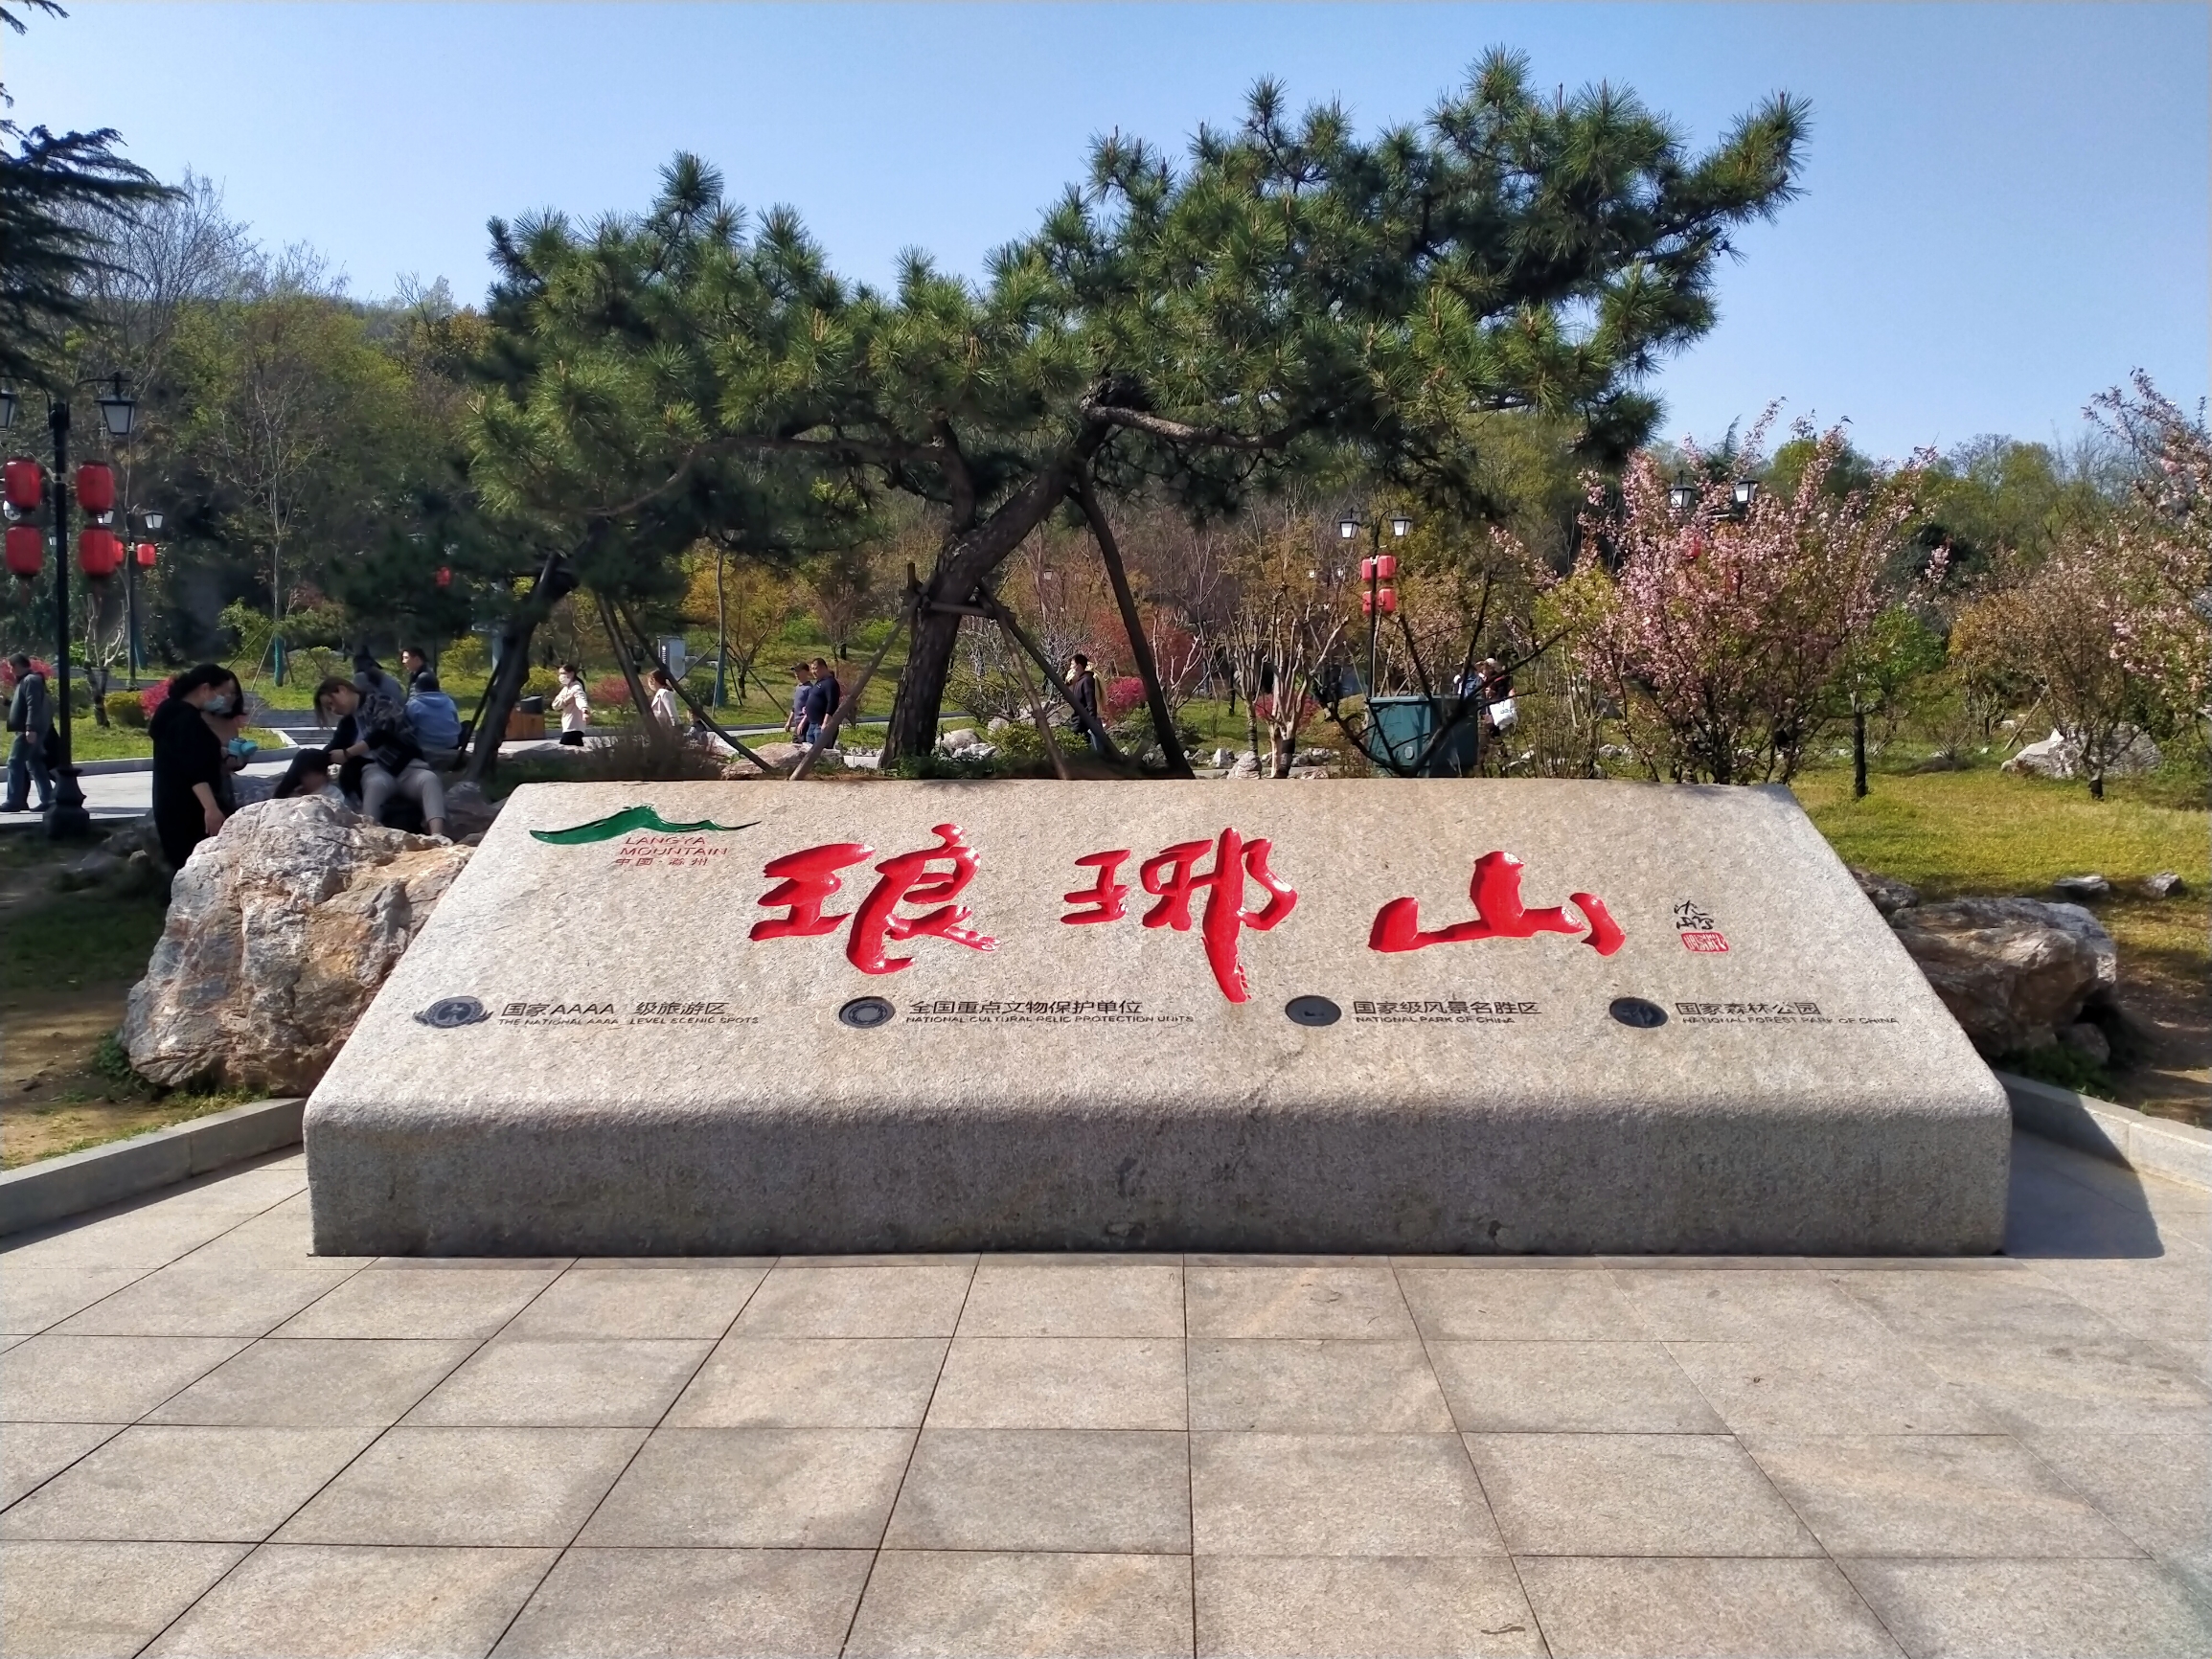 琅琊山风景区位于安徽省滁州市，国家级风景名胜区，国家森林公园，因欧阳修的一篇《醉翁亭记》而名扬天下，